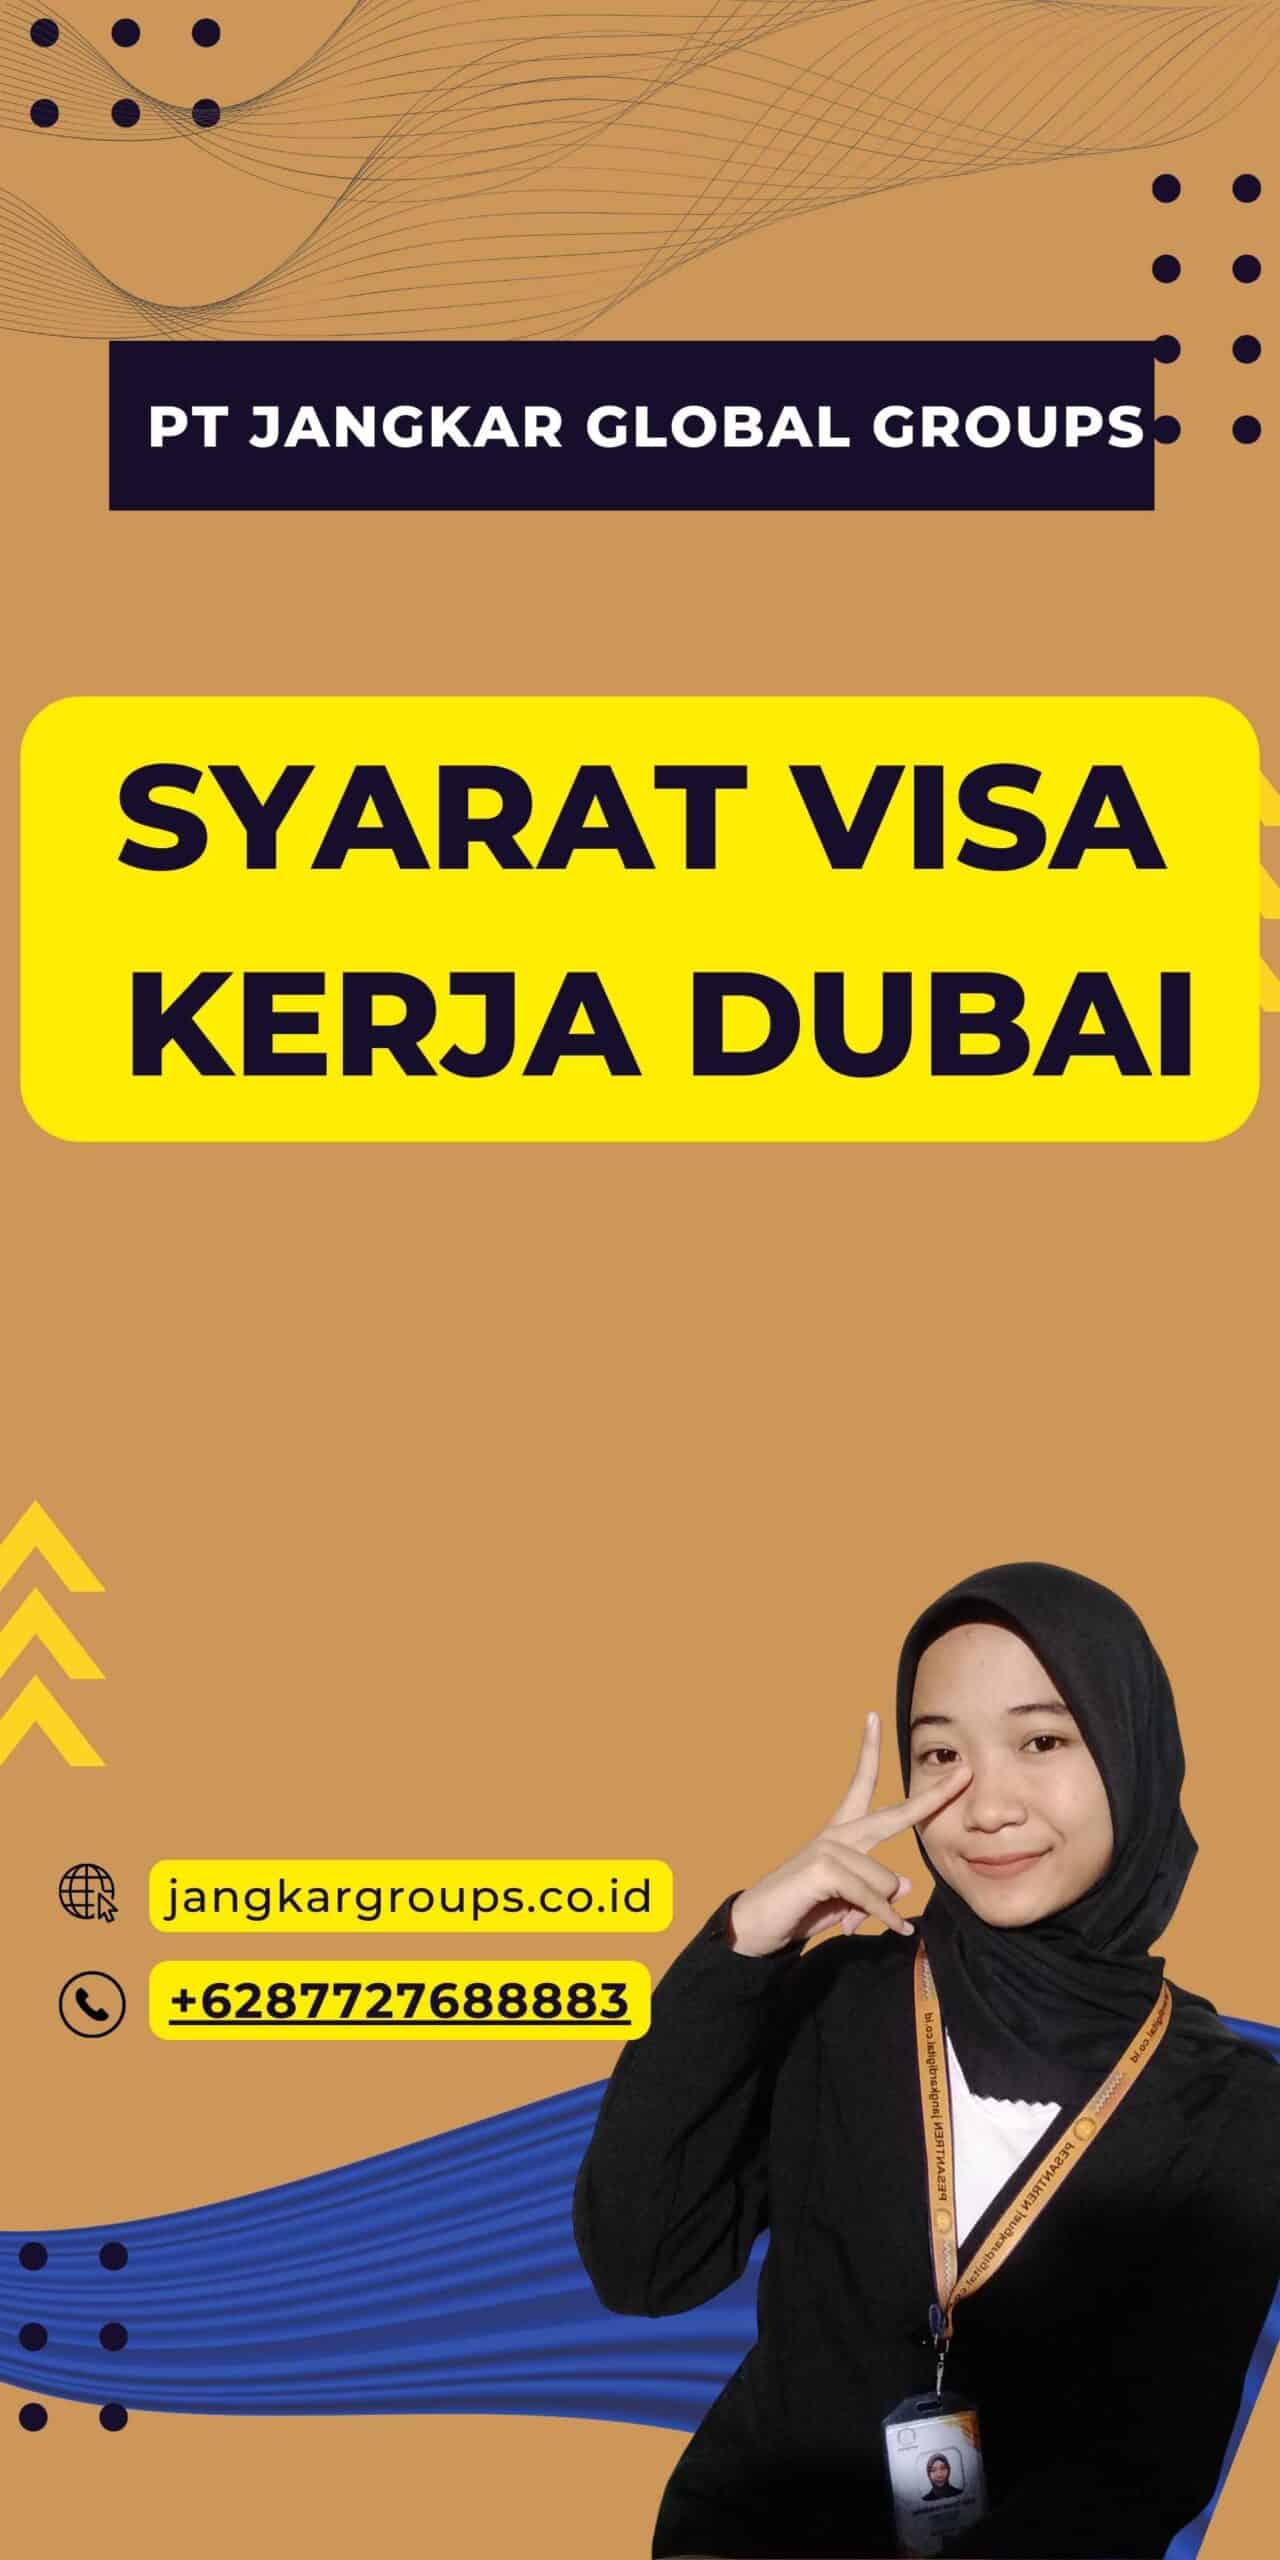 Syarat Visa Kerja Dubai